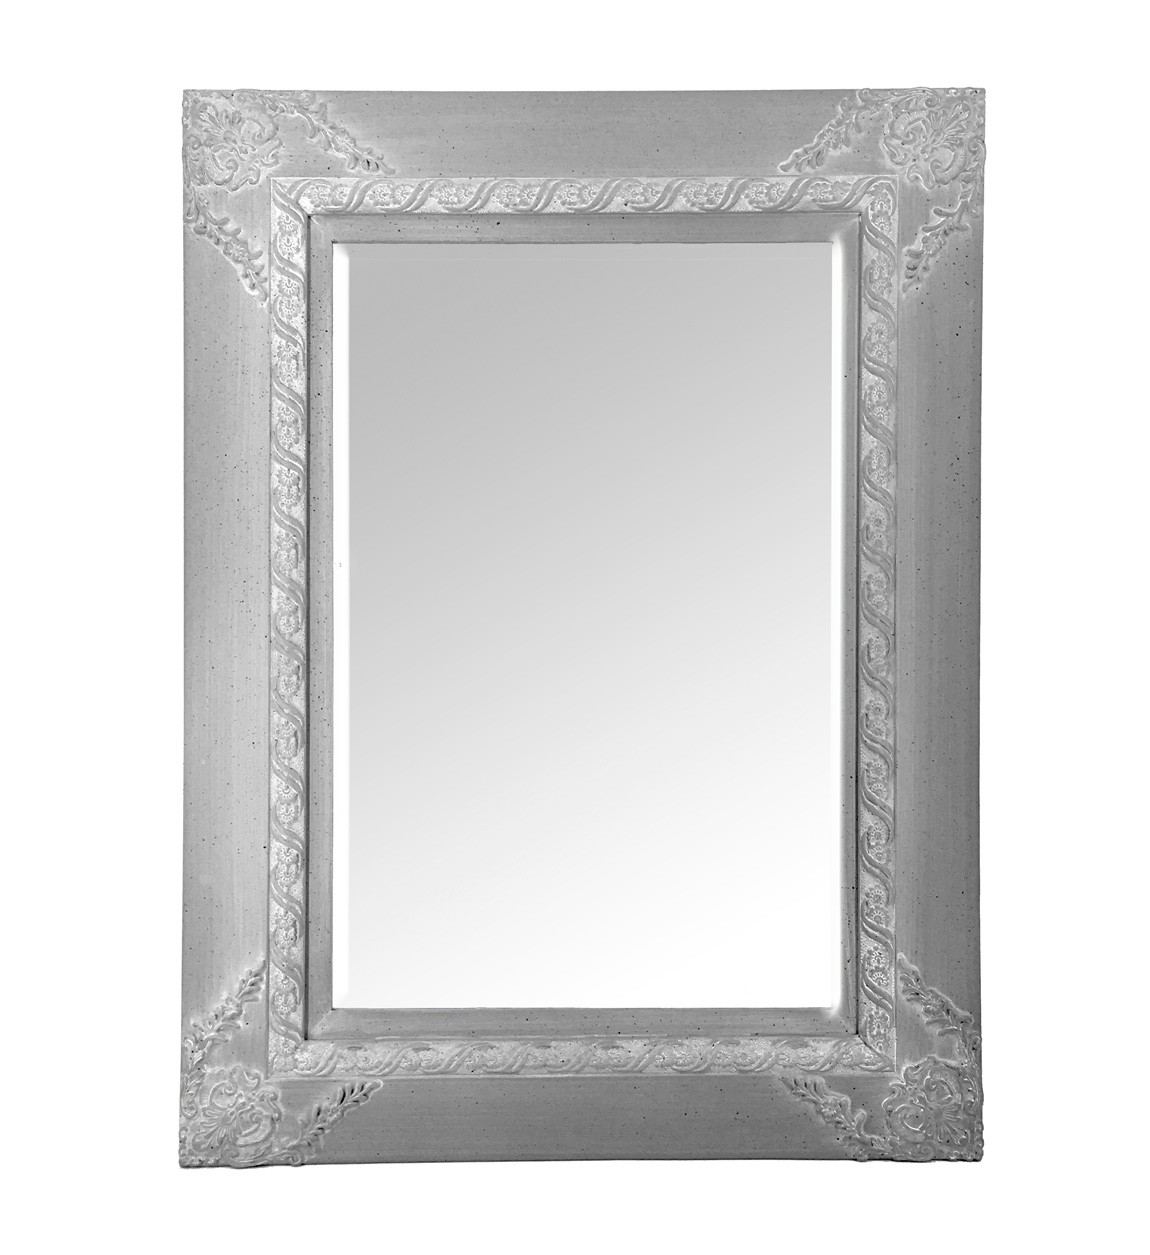 Estila Luxusní vintage obdélníkové zrcadlo Ancilla s tlustým hliněným rámem v šedo-bílém provedení 120cm